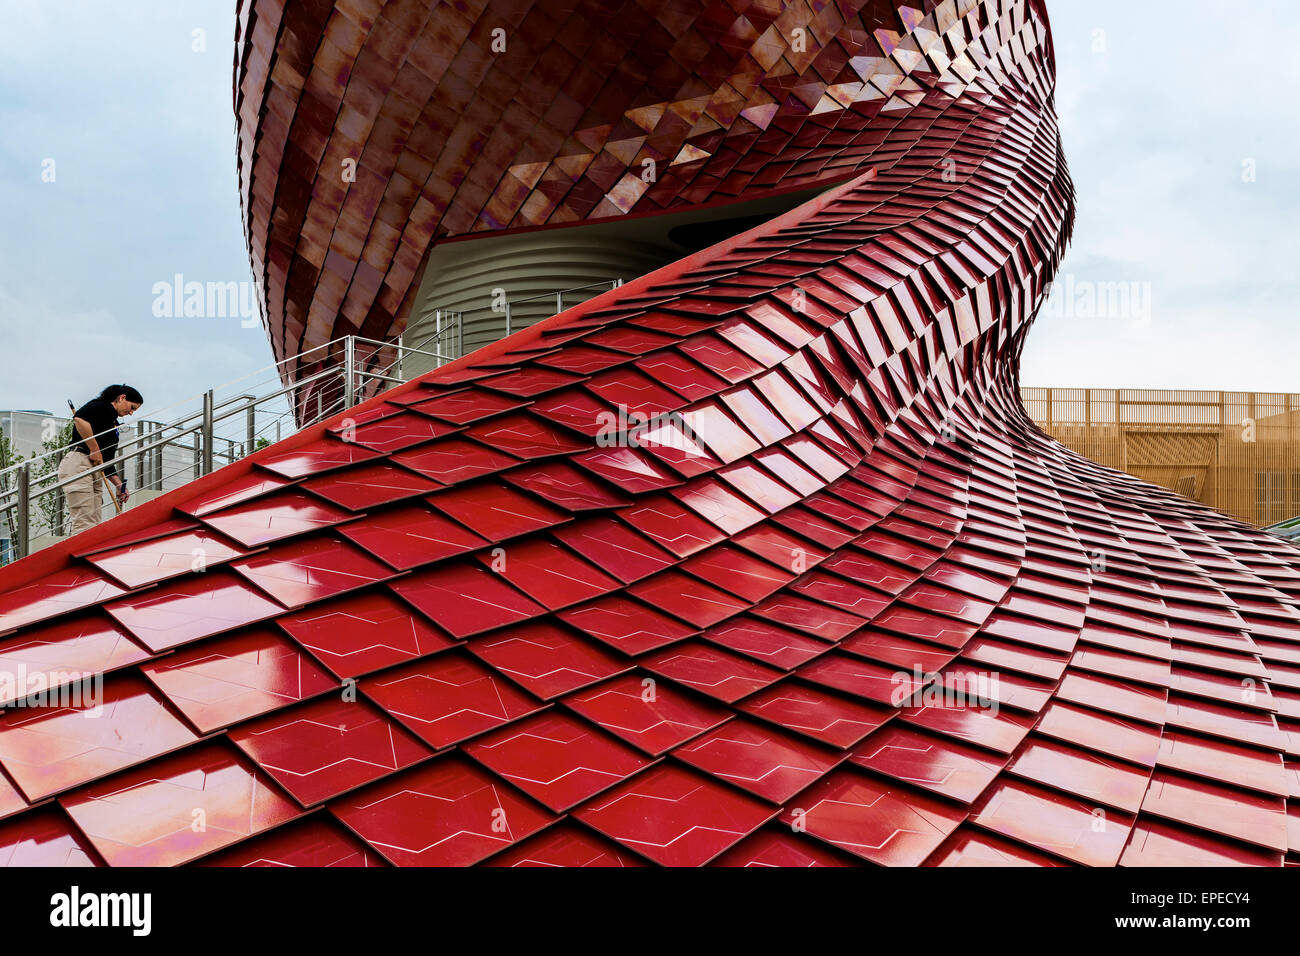 Dettaglio del modello di tegola con scala. Milano Expo 2015, Padiglione Vanke, Milano, Italia. Architetto: Daniel Libeskind, 2015. Foto Stock